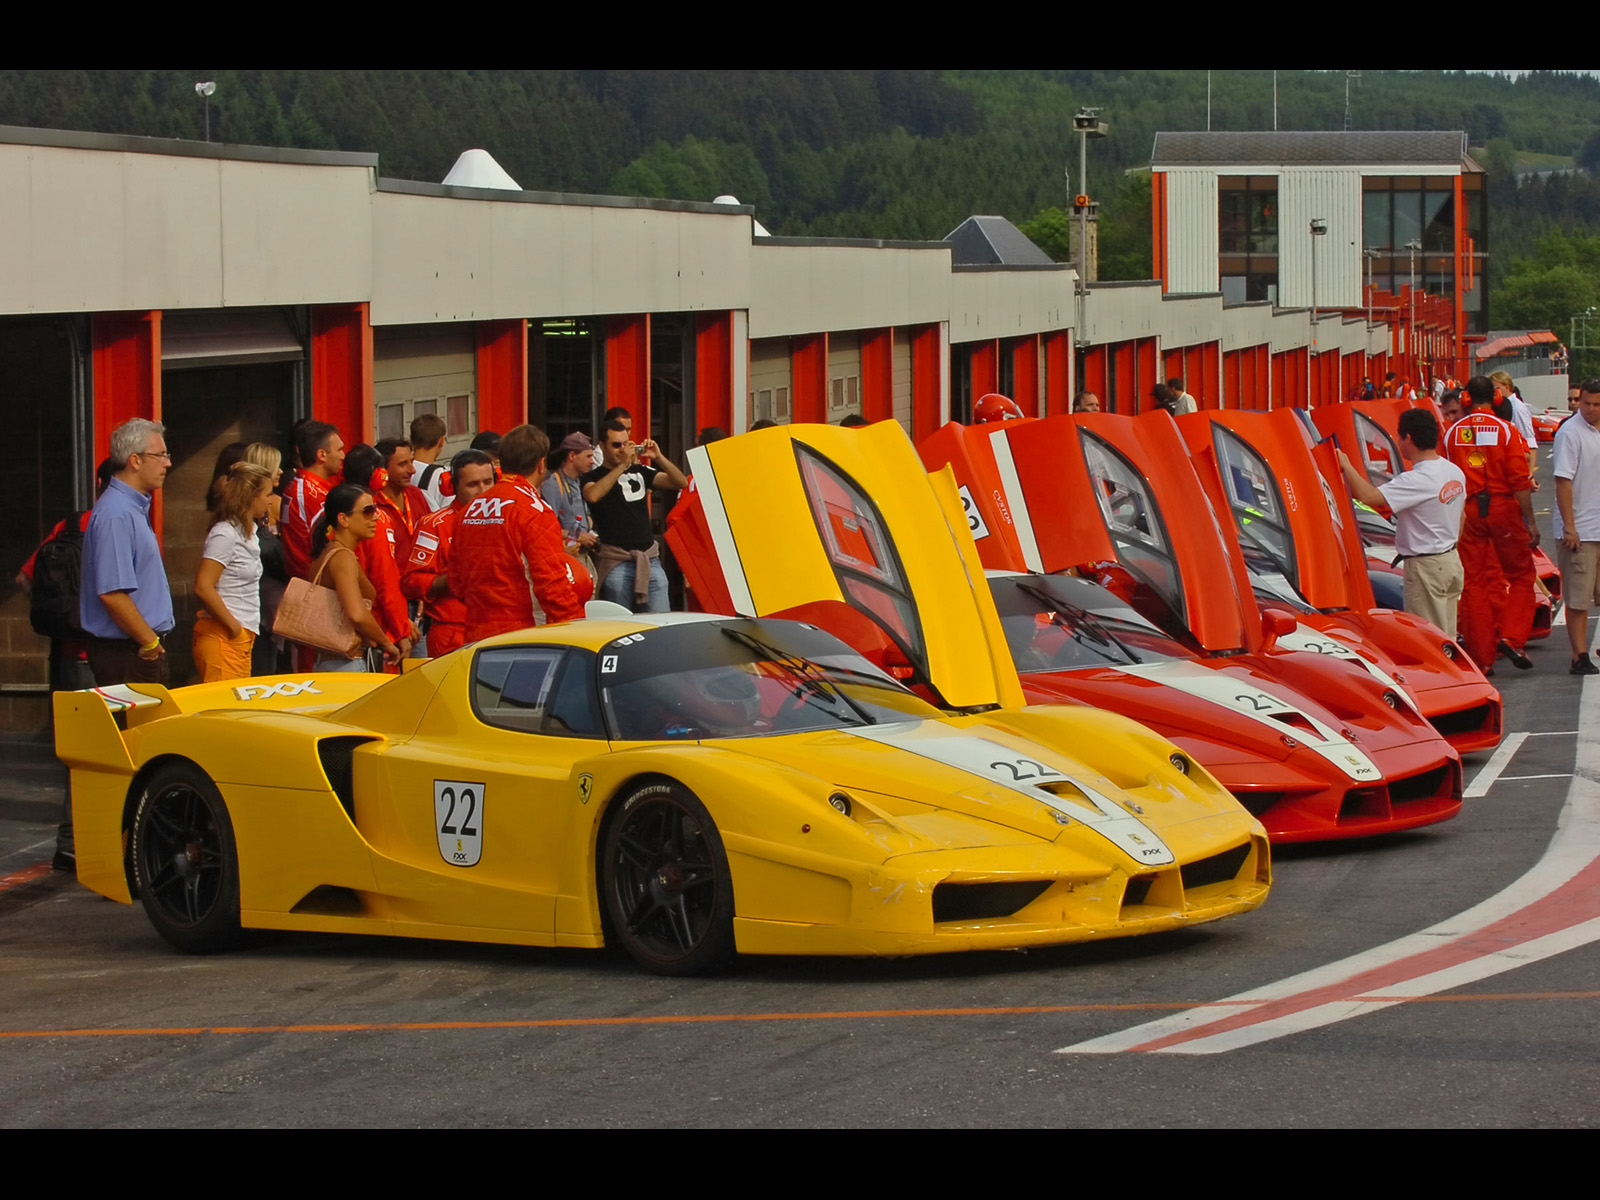 Ferrari Fxx Yellow 22 , HD Wallpaper & Backgrounds